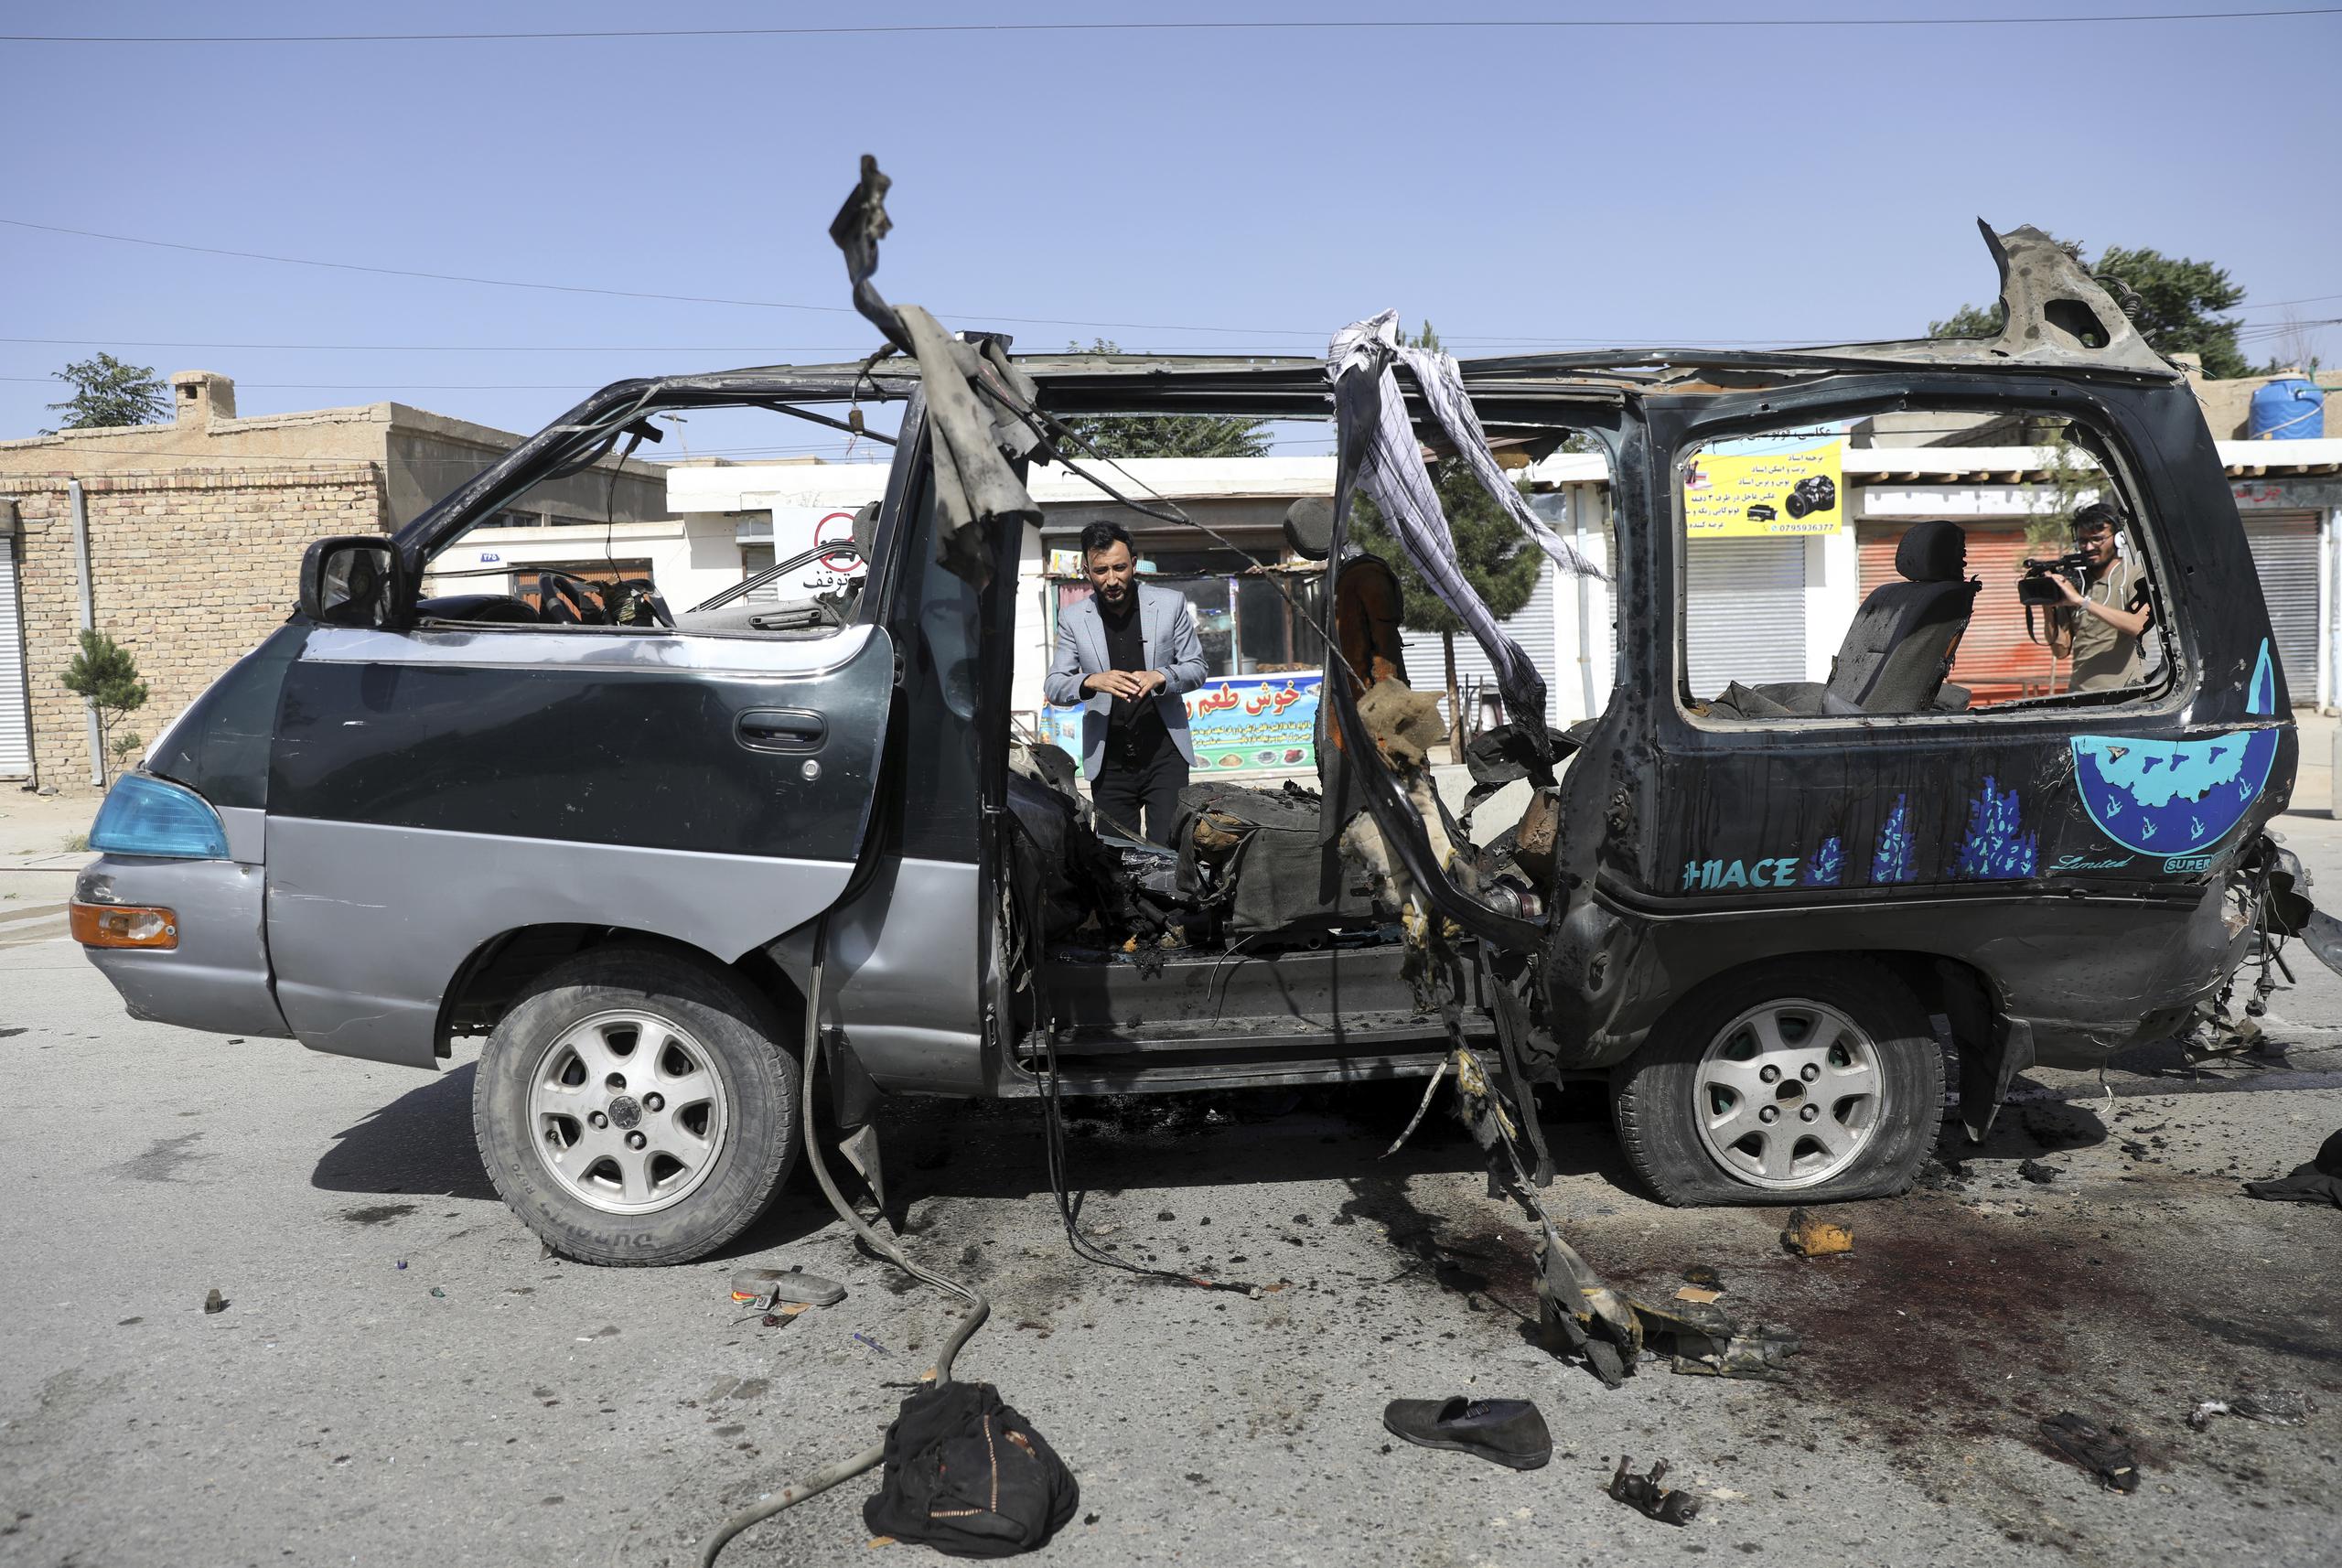 El grupo Estado Islámico ha realizado ataques similares en la zona; el martes, un ataque con dos minivans mató a una decena de personas.